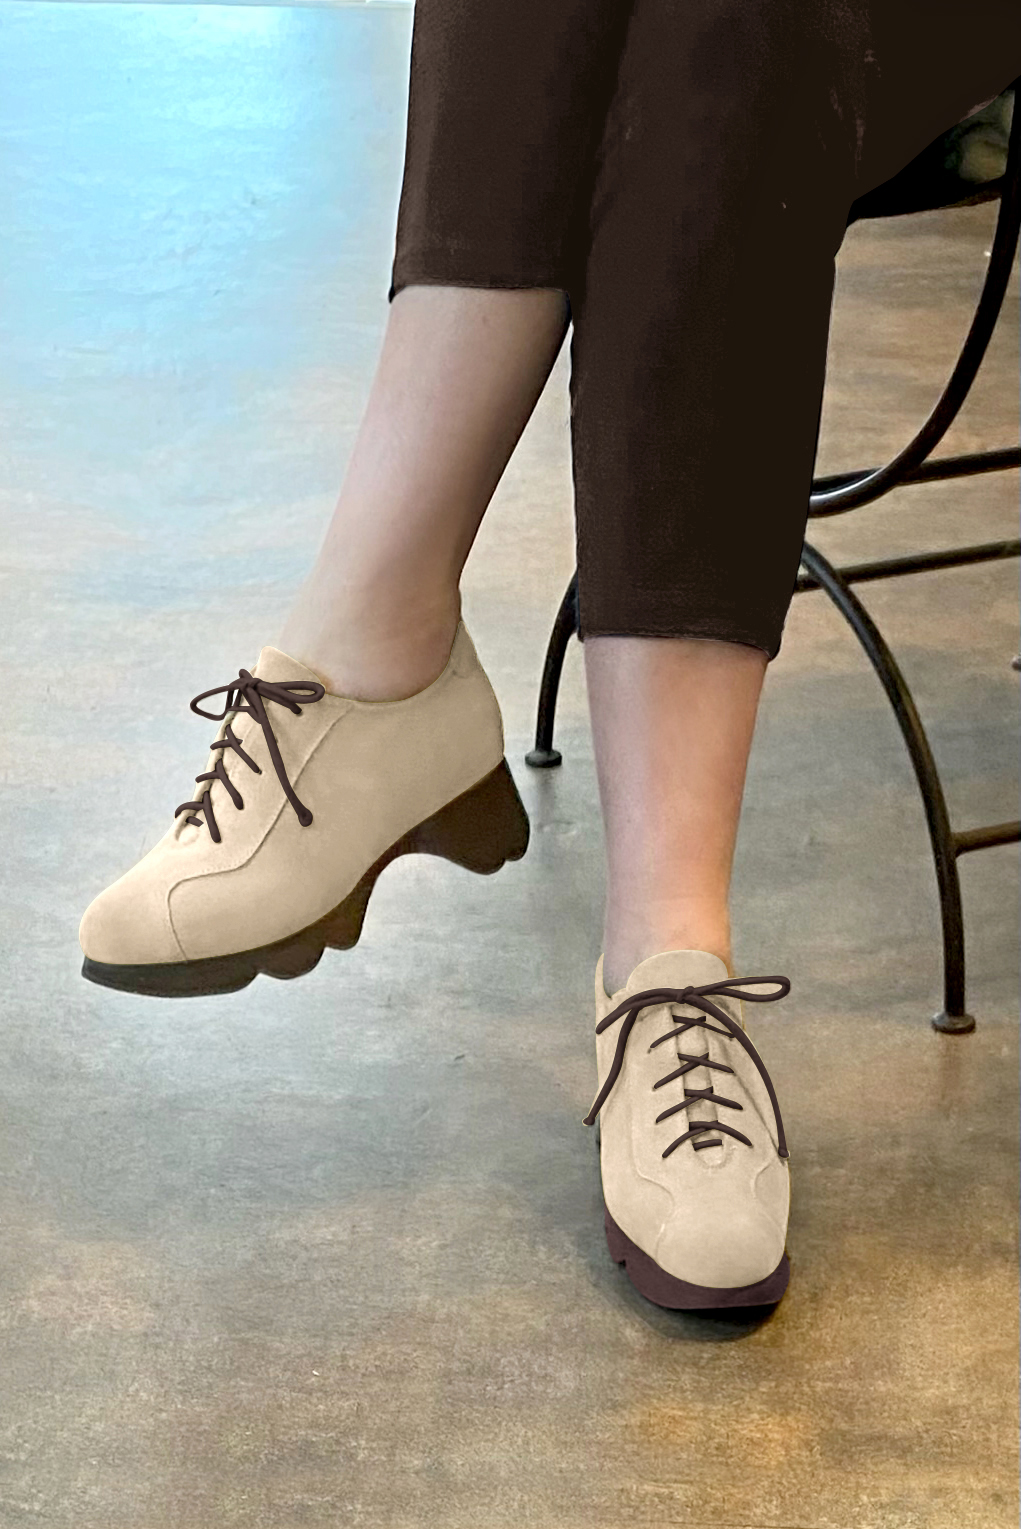 Chaussure femme à lacets : Derby sport couleur blanc ivoire.. Vue porté - Florence KOOIJMAN